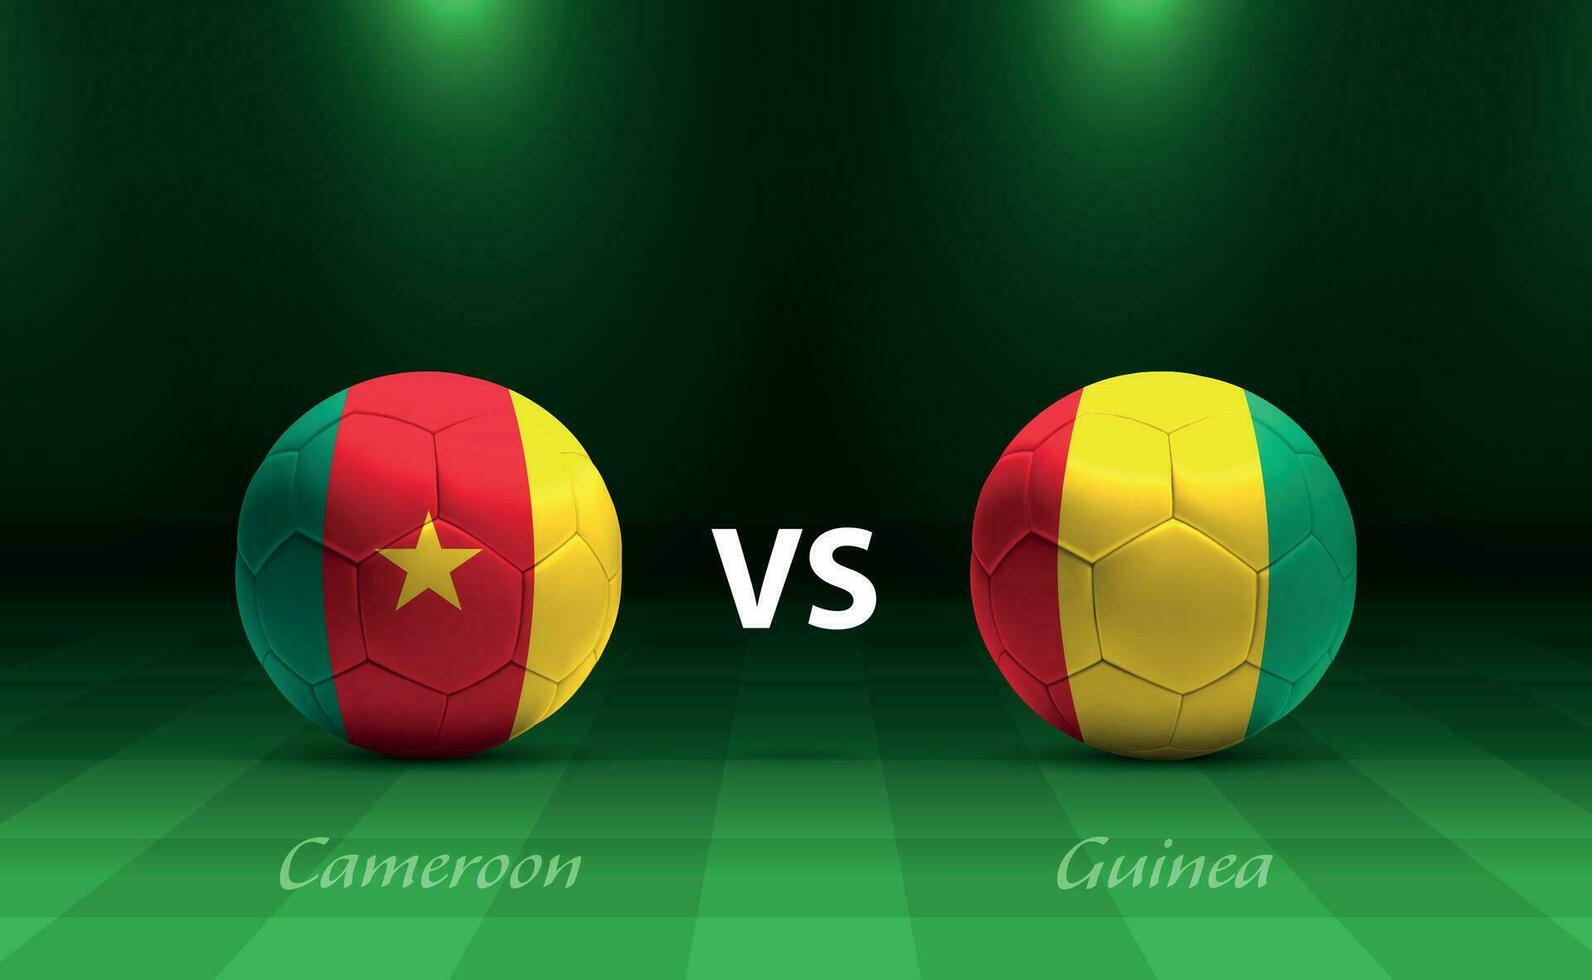 Cameroon vs Guinea football scoreboard broadcast template vector